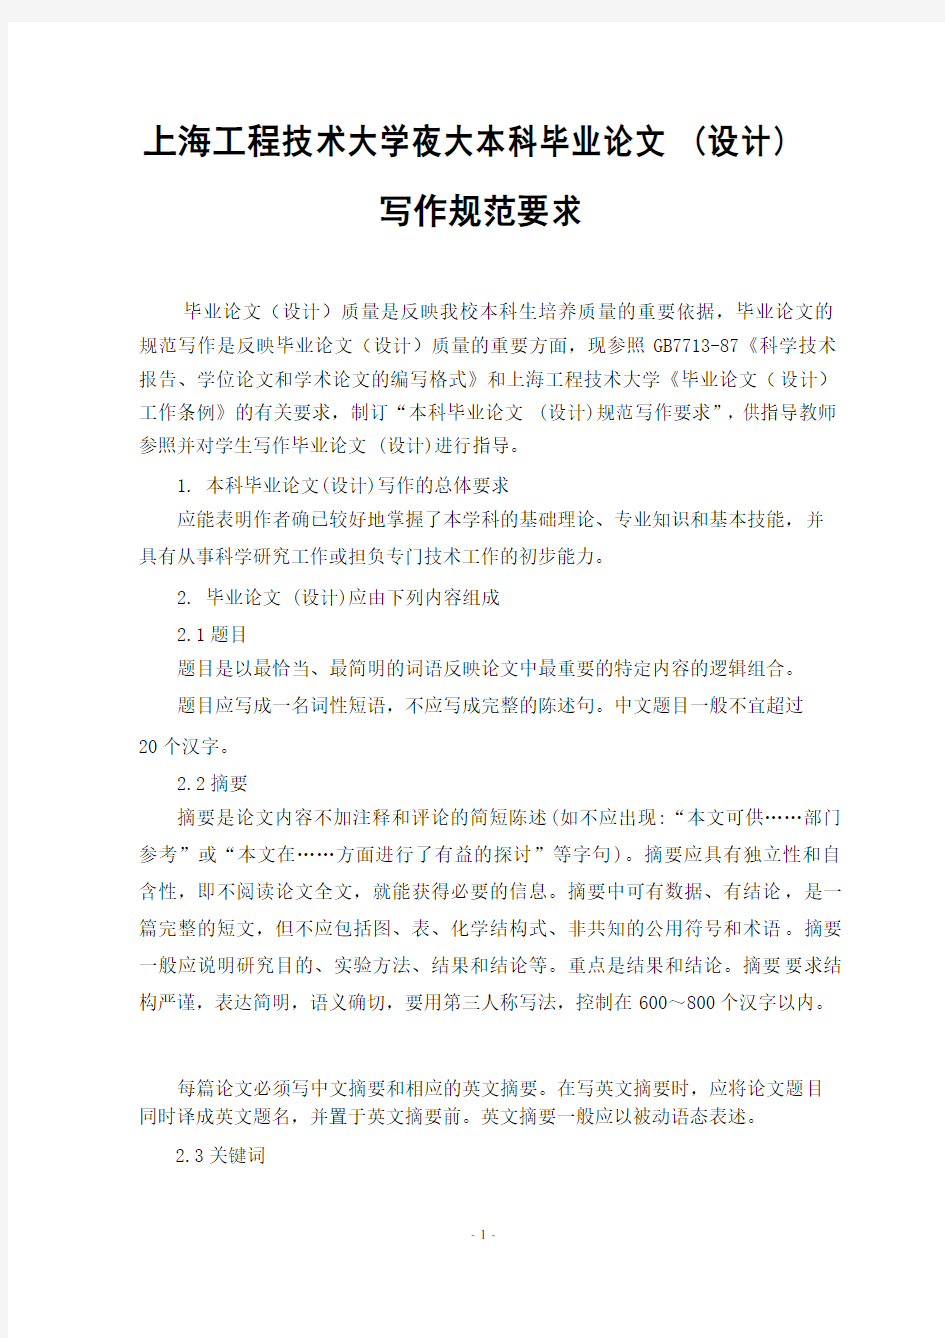 上海工程技术大学本科毕业设计论文规范写作要求